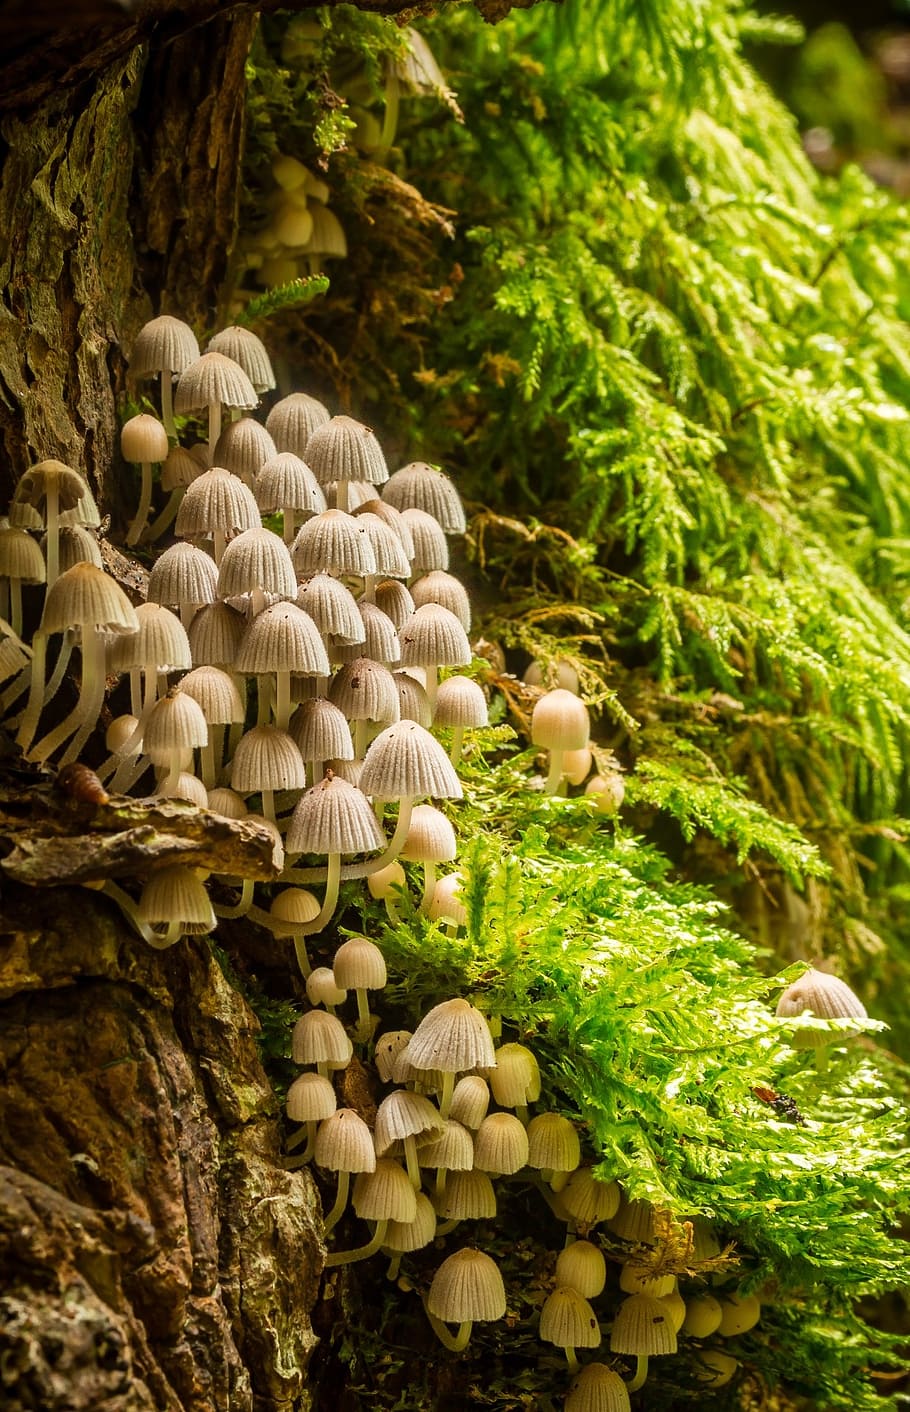 beige, mushroom, growing, side, brown, tree trunk, daytijme, mushrooms, mushroom colony, tender